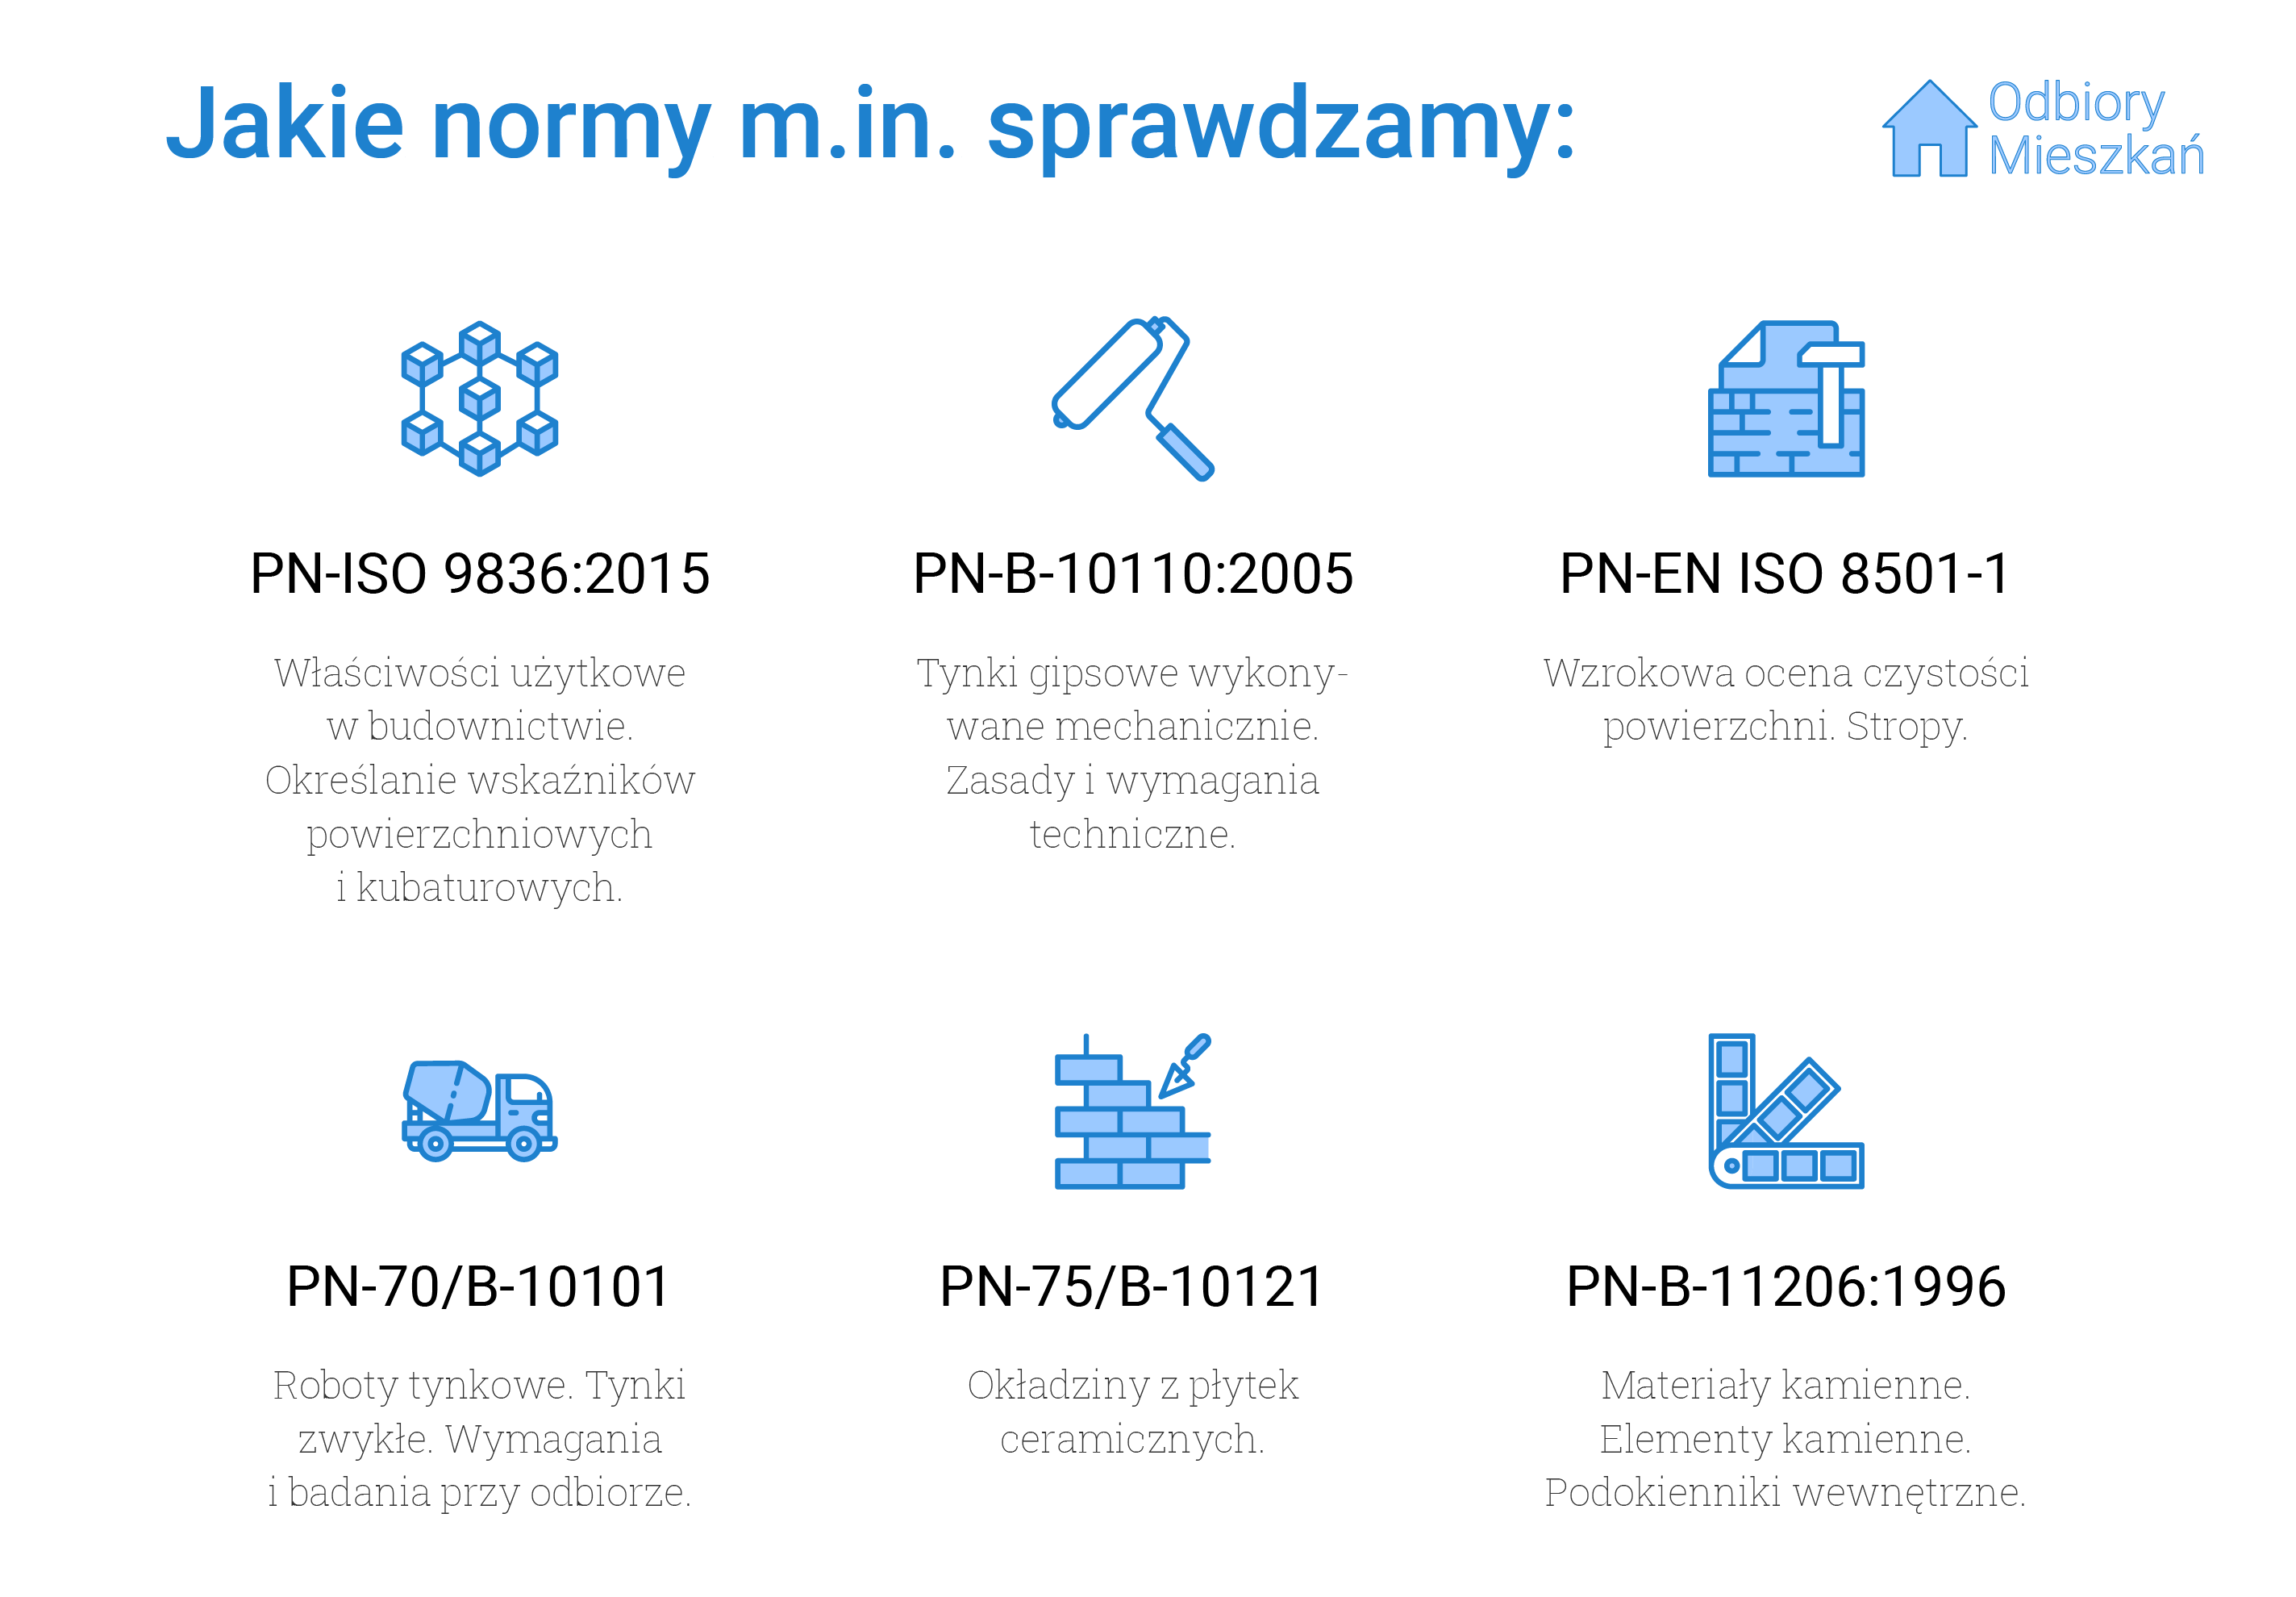 Normy, jakie sprawdzamy podczas odbioru technicznego w Lublinie: PN-ISO 9836:2015 - właściwości użytkowe w budownictwie i określanie wskaźników powierzchni kubaturowych, PN-B-10110:2005 - tynki gipsowe wykonywane mechanicznie oraz zasady i wymagania techniczne wykonywania tynków, PN-EN ISO 8501-1, czyli wzrokowa ocena czystości powierzchni oraz stropy, PN-70/B-10101 - roboty tynkowe, tynki zwykłe oraz wymagania przy odbiorze tynków, PN-75/B10121, czyli okładziny z płytek ceramicznych oraz PN-B-11206:1996, czyli materiały i elementy kamienne oraz podokienniki wewnętrzne.